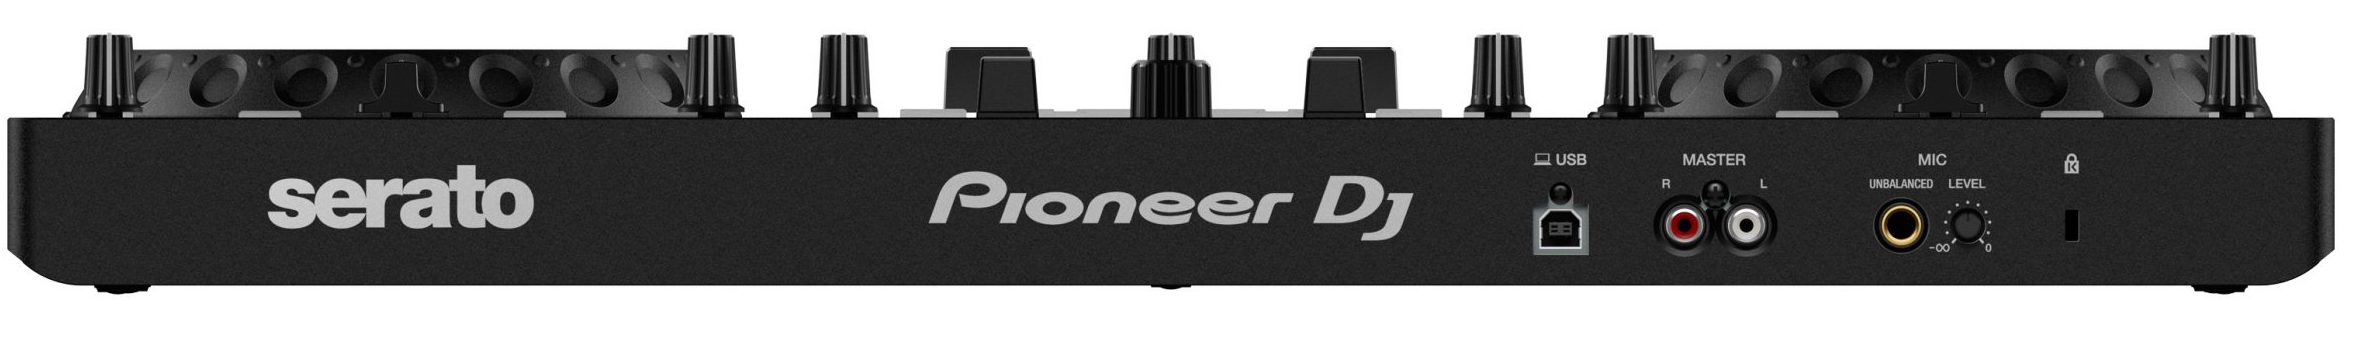 Pioneer Dj Ddj-rev1 - USB DJ controller - Variation 3